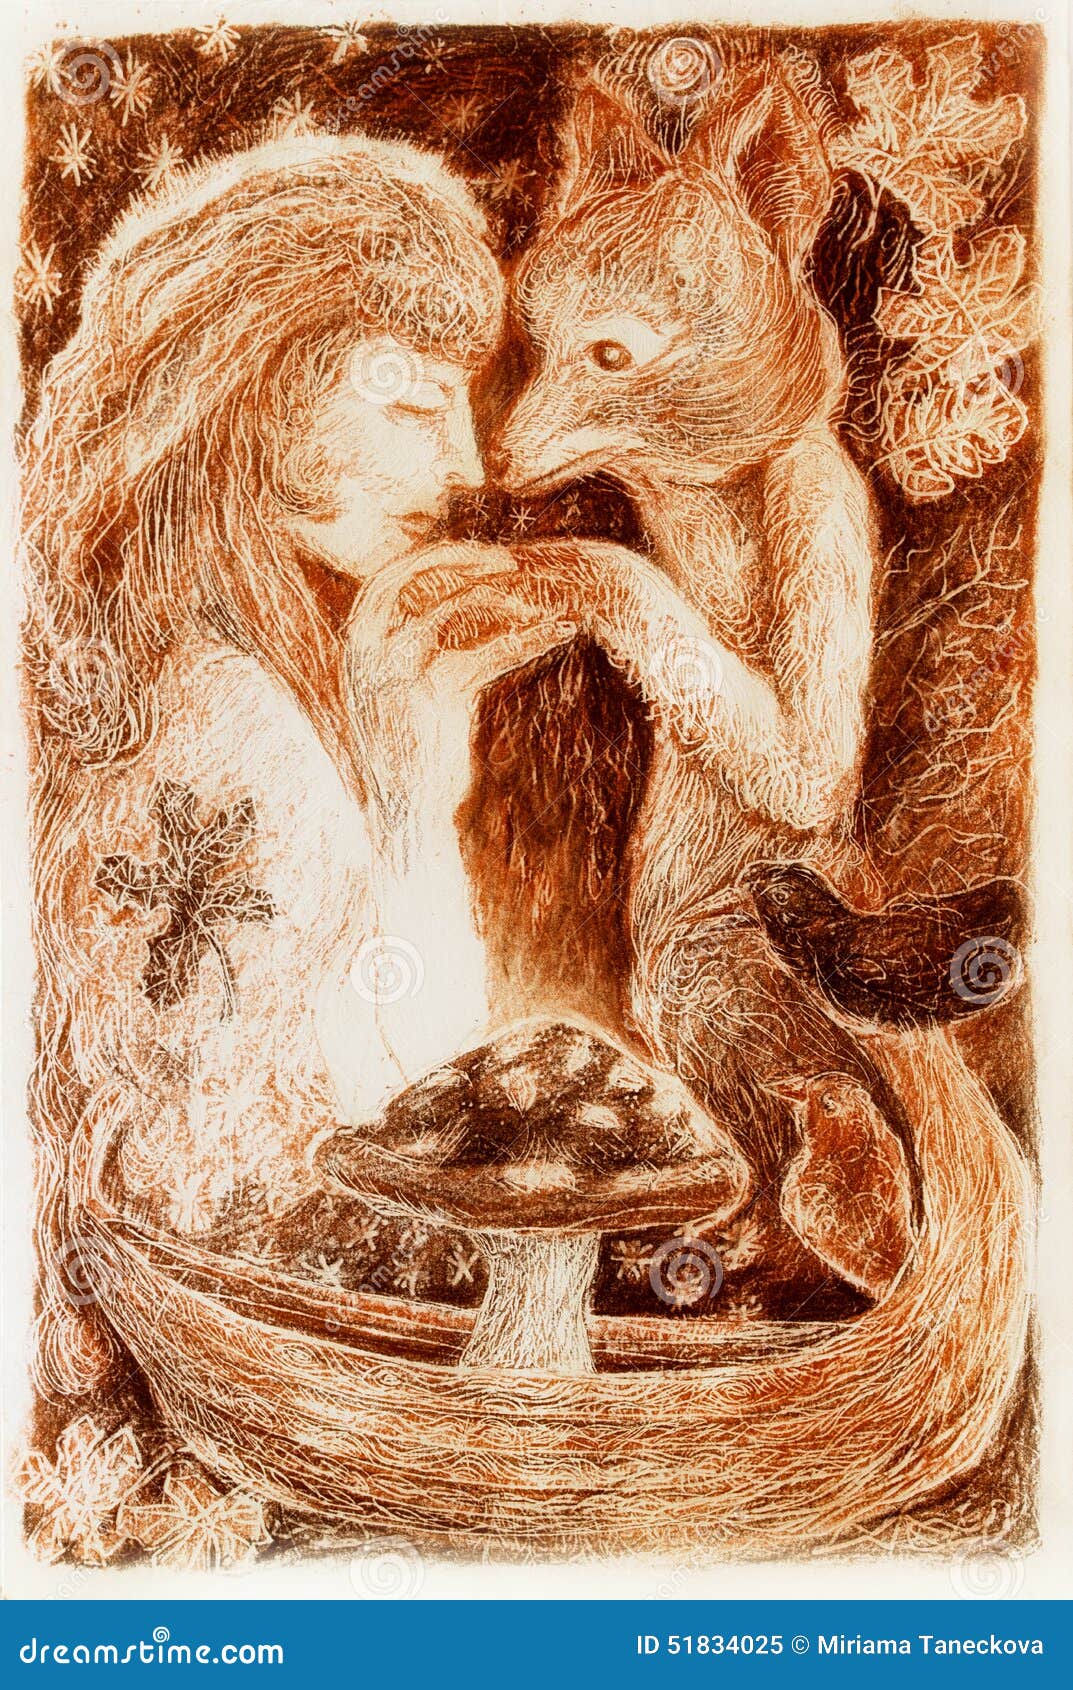 woman mystical alliance with a fox, fantasy